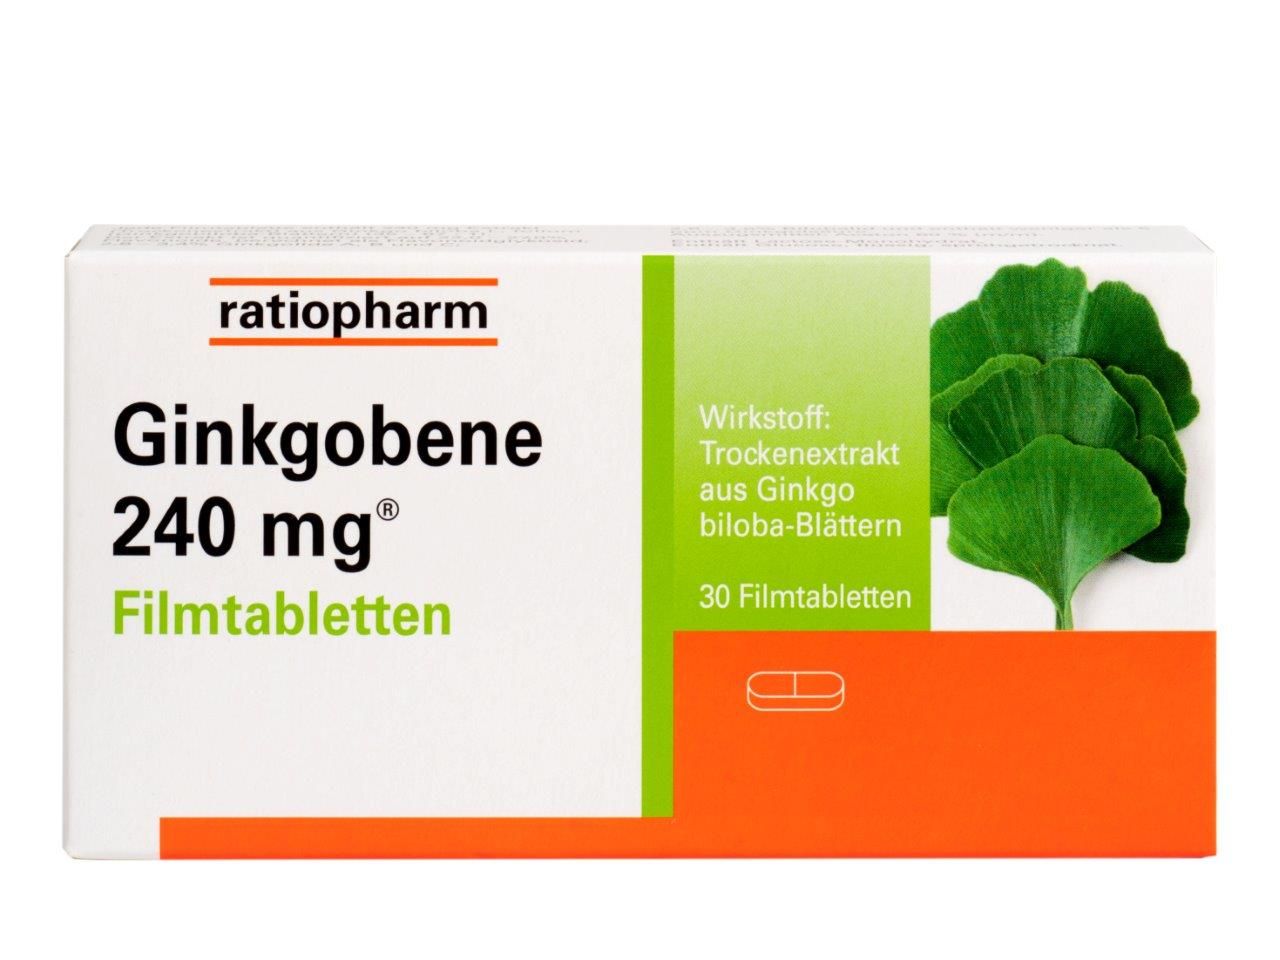 Prednisone 20 mg tablet price